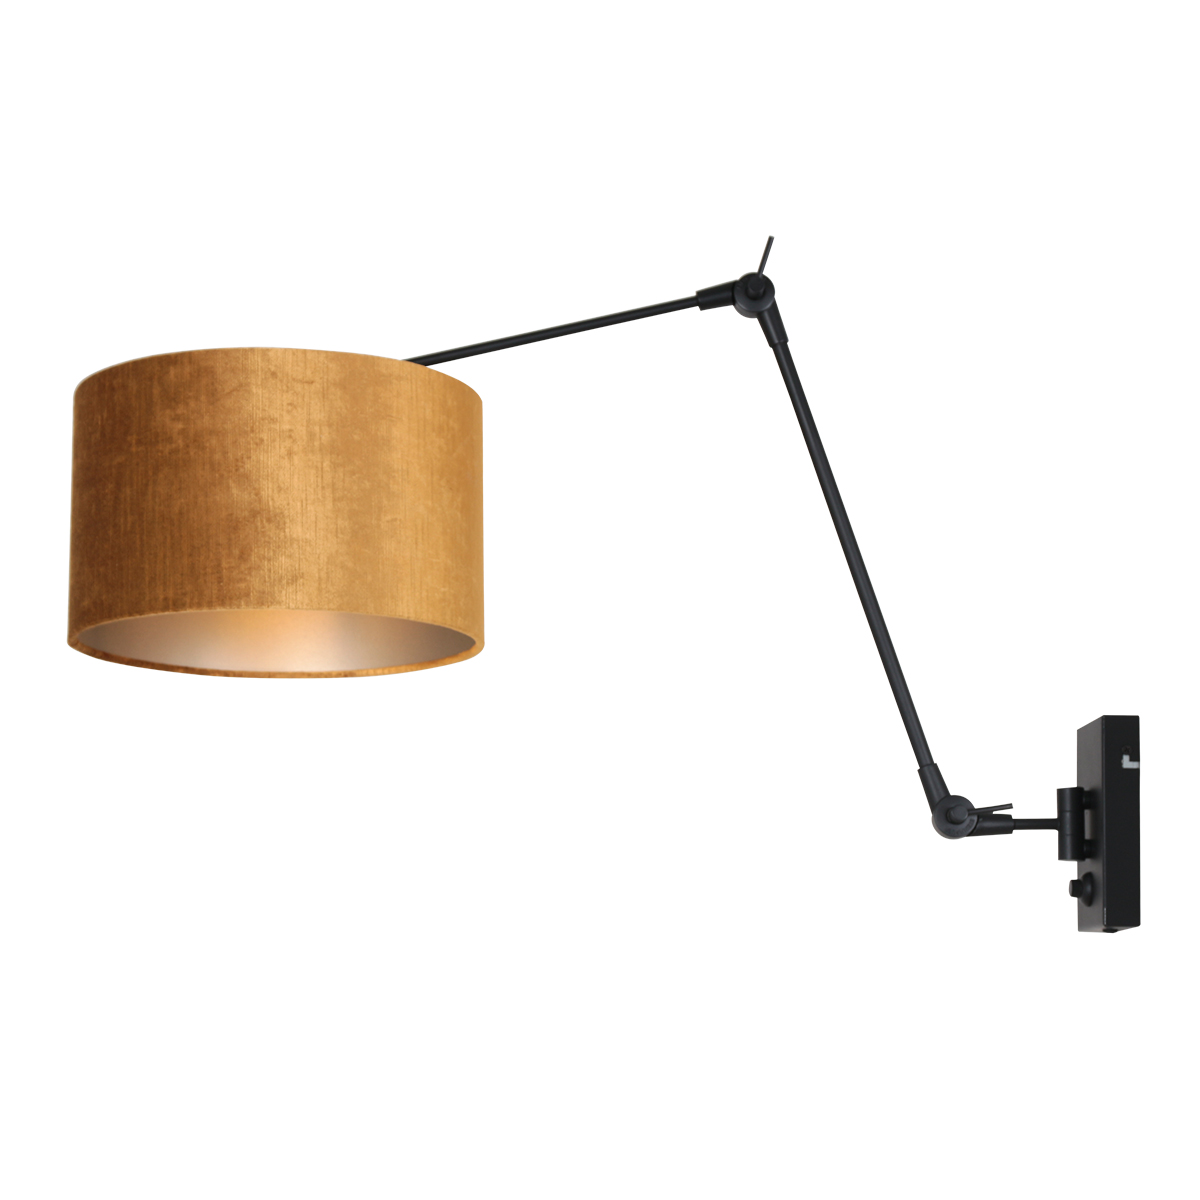 Metalen verstelbare wandlamp met kap Prestige Chic | Industriele lampen online